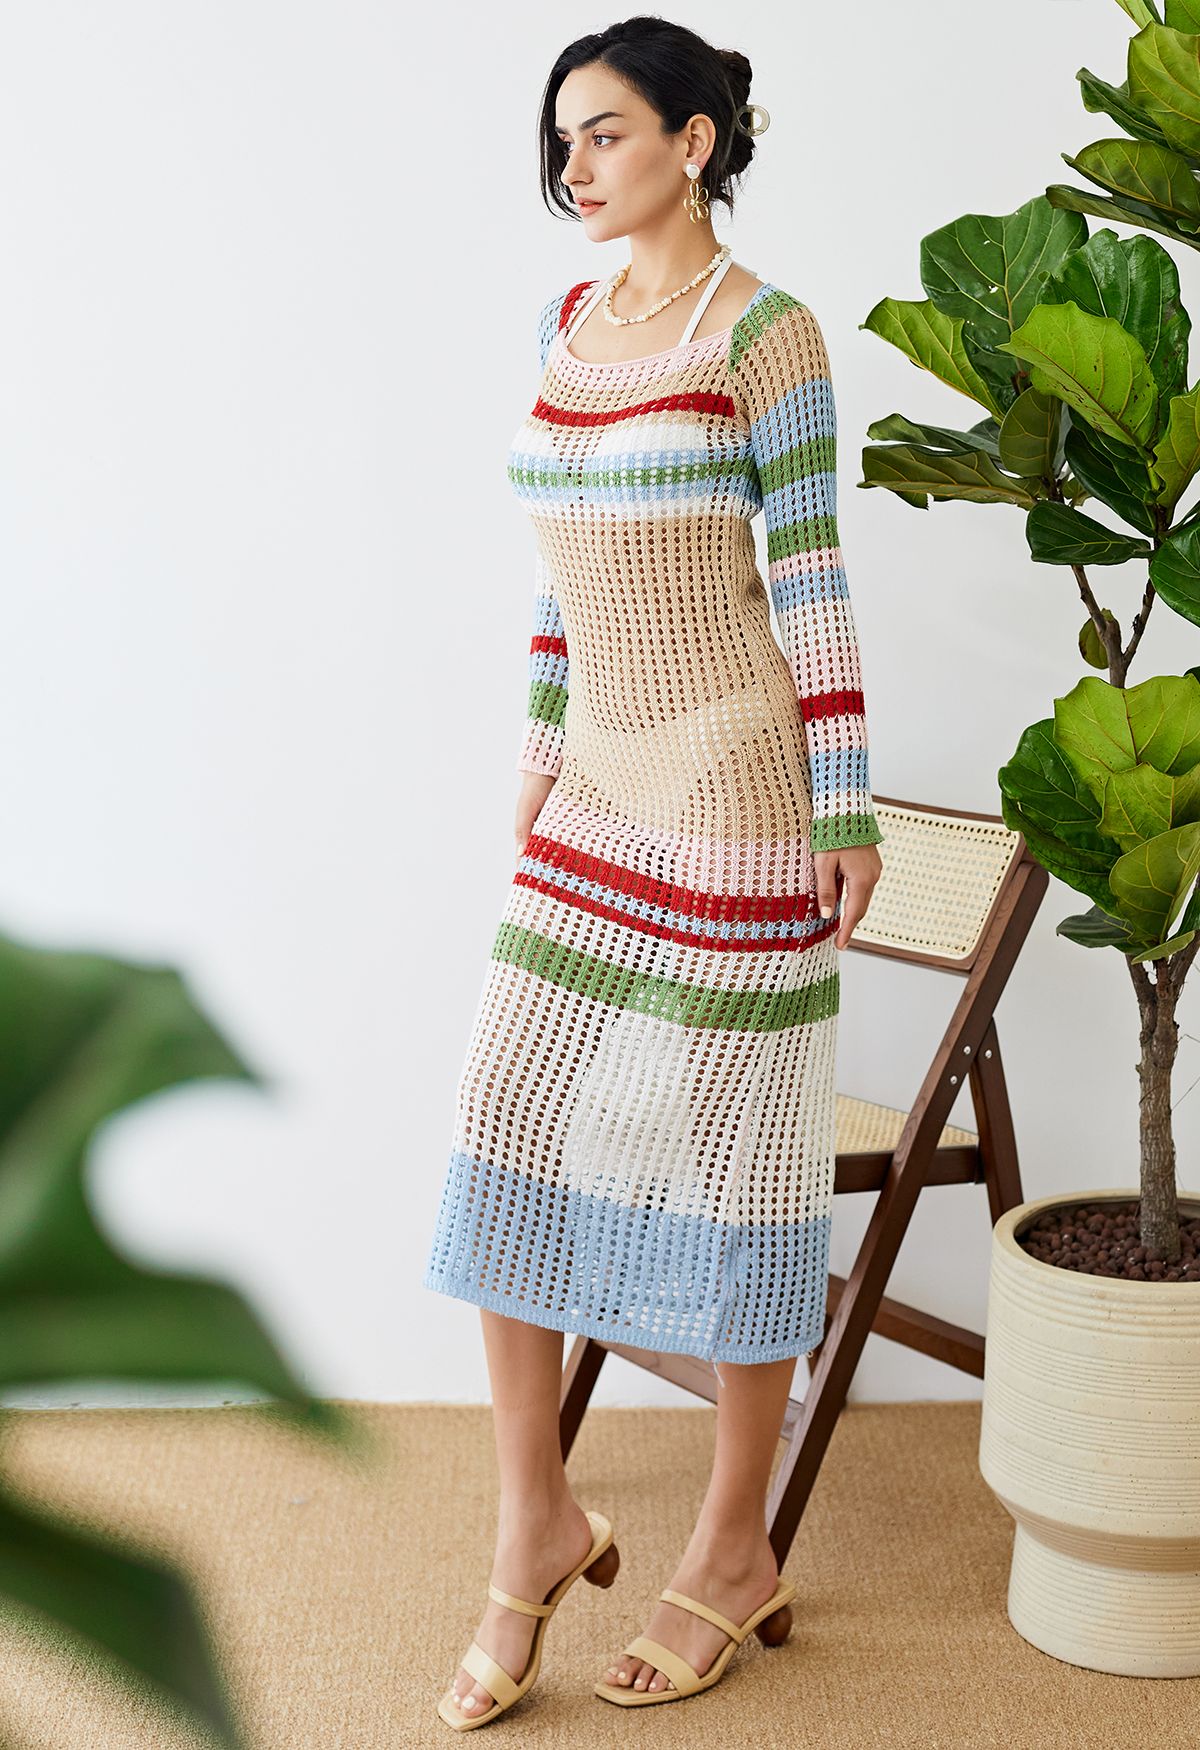 Couverture en tricot évidé à rayures colorées